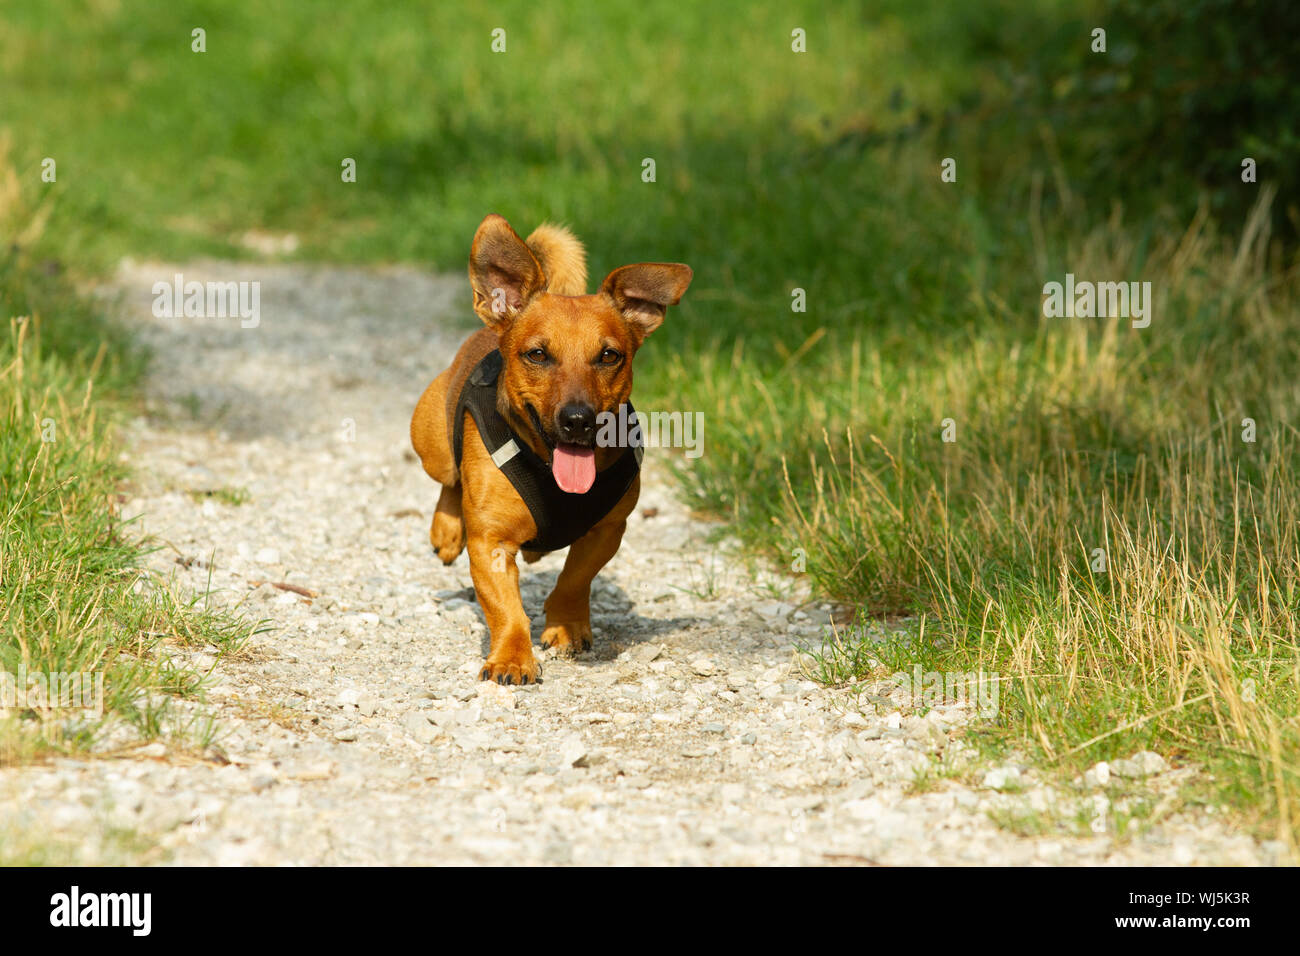 Niedliche Mischling Hund spielen auf einer Wiese. Alter von fast 2 Jahren.  Parson Jack Russell - Deutscher Schäferhund - Chihuahua mix Stockfotografie  - Alamy